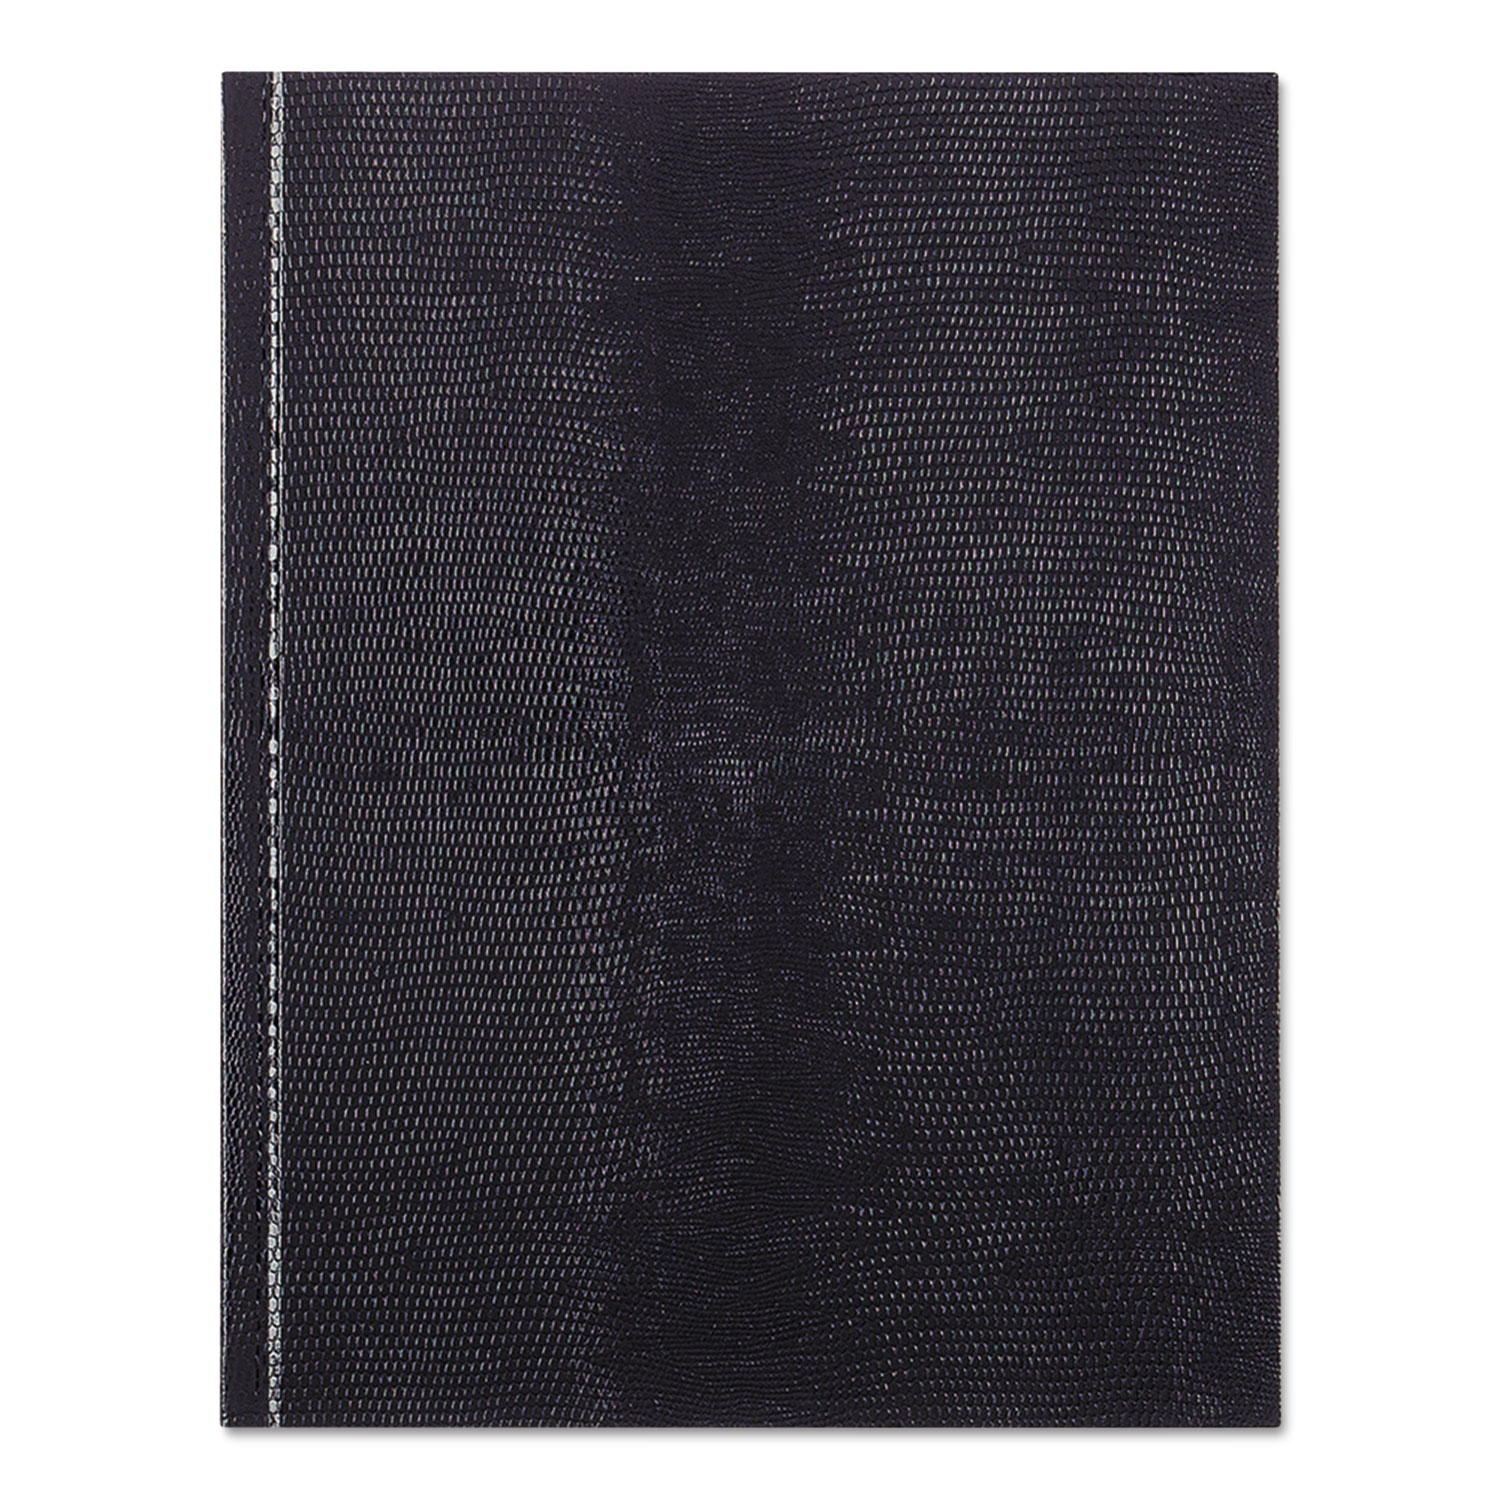  Blueline A7.BLU Executive Notebook, Medium/College Rule, Blue Cover, 9.25 x 7.25, 150 Sheets (REDA7BLU) 